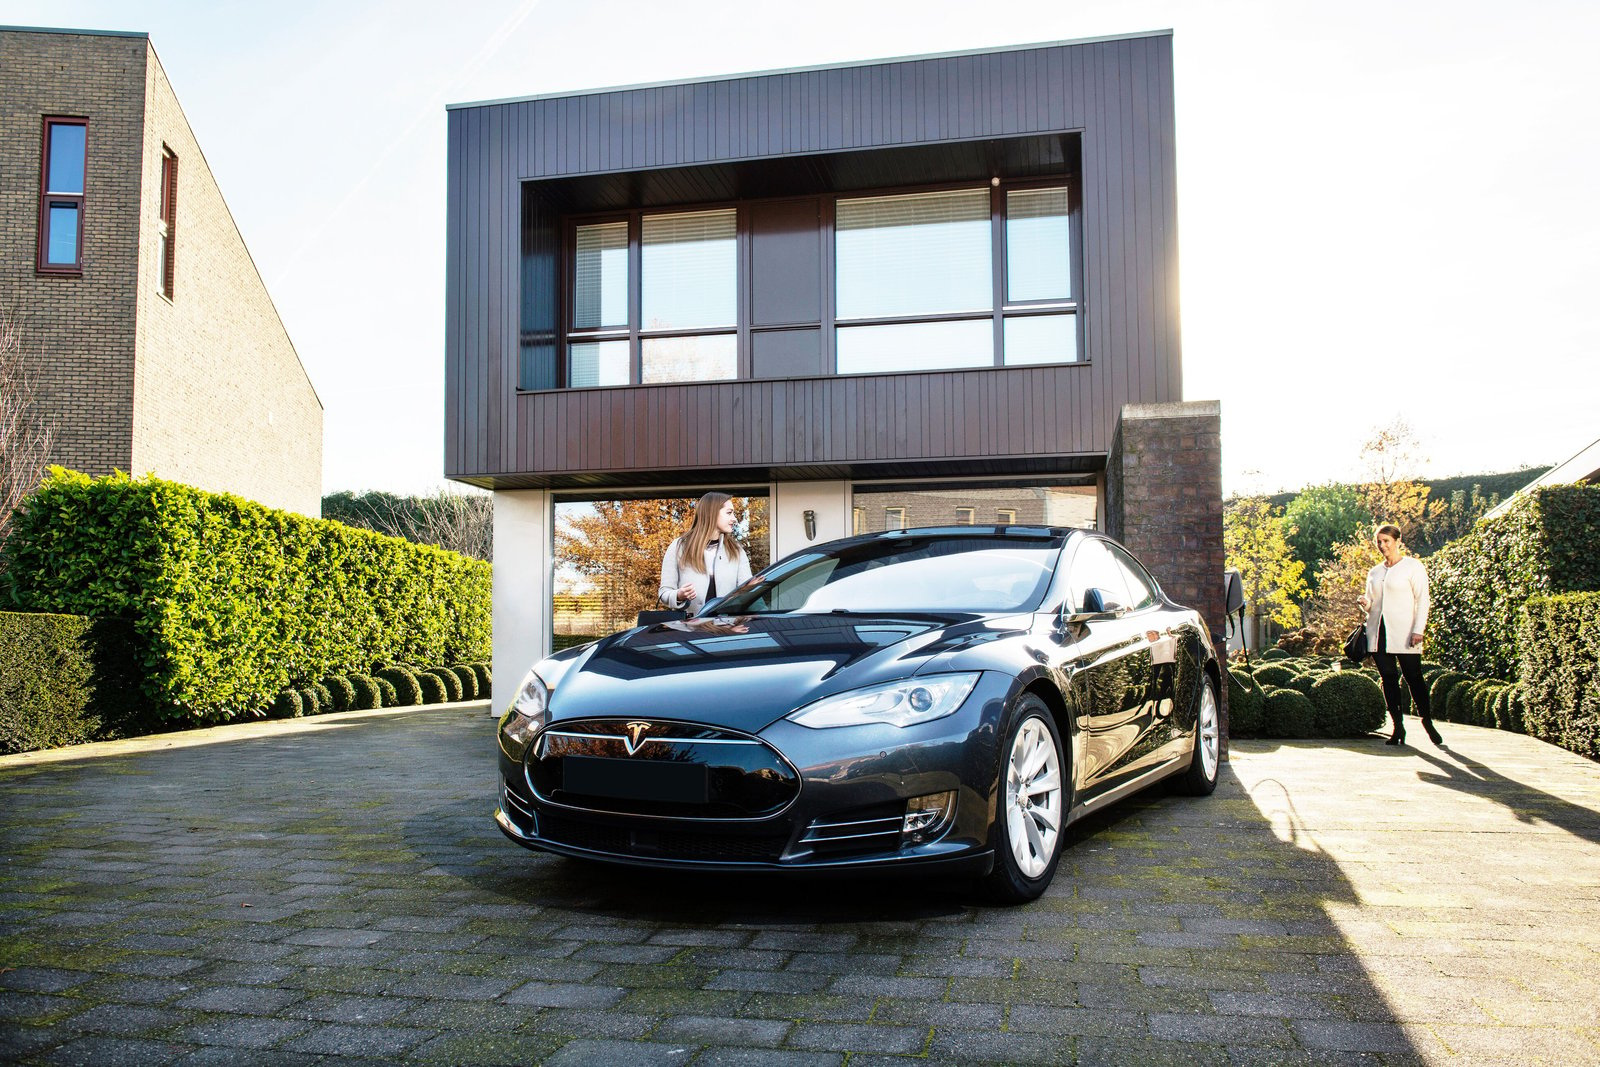 Ein schwarzer Tesla ist an einem sonnigen Tag vor einem modernen Haus geparkt. Eine Frau nähert sich dem Fahrzeug, und eine weitere Person steht im Hintergrund, neben dem Haus.